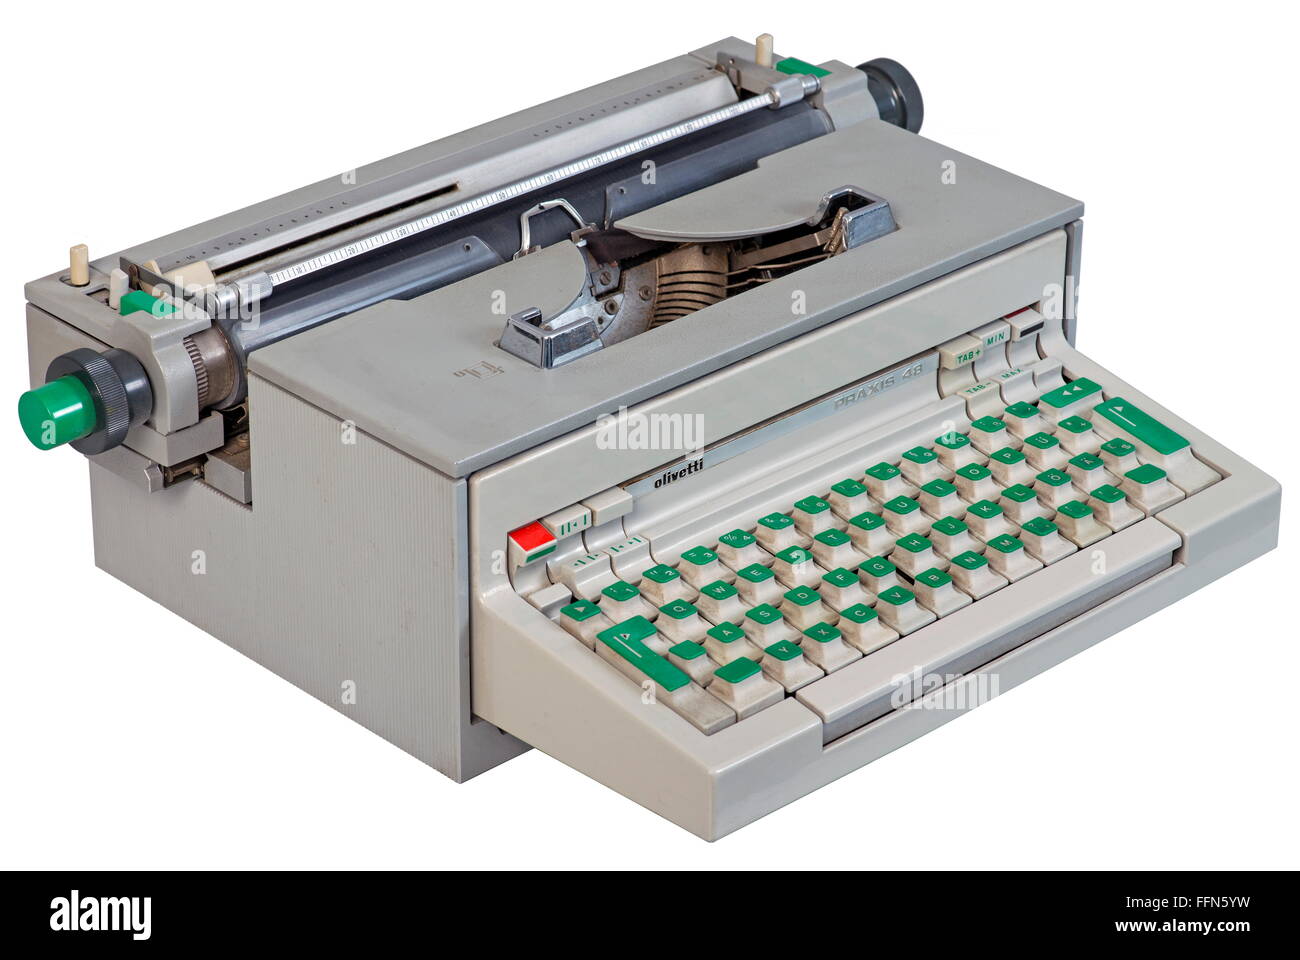 Ordenador / electrónica,ordenador,máquina de escribir eléctrica Olivetti  Praxis 48,diseño de Ettore Sottsass y Hans von Klier,Italia,1964,material  sintético,materiales  sintéticos,sintéticos,sintéticos,sintéticos,sintéticos,gris,gris,escritura